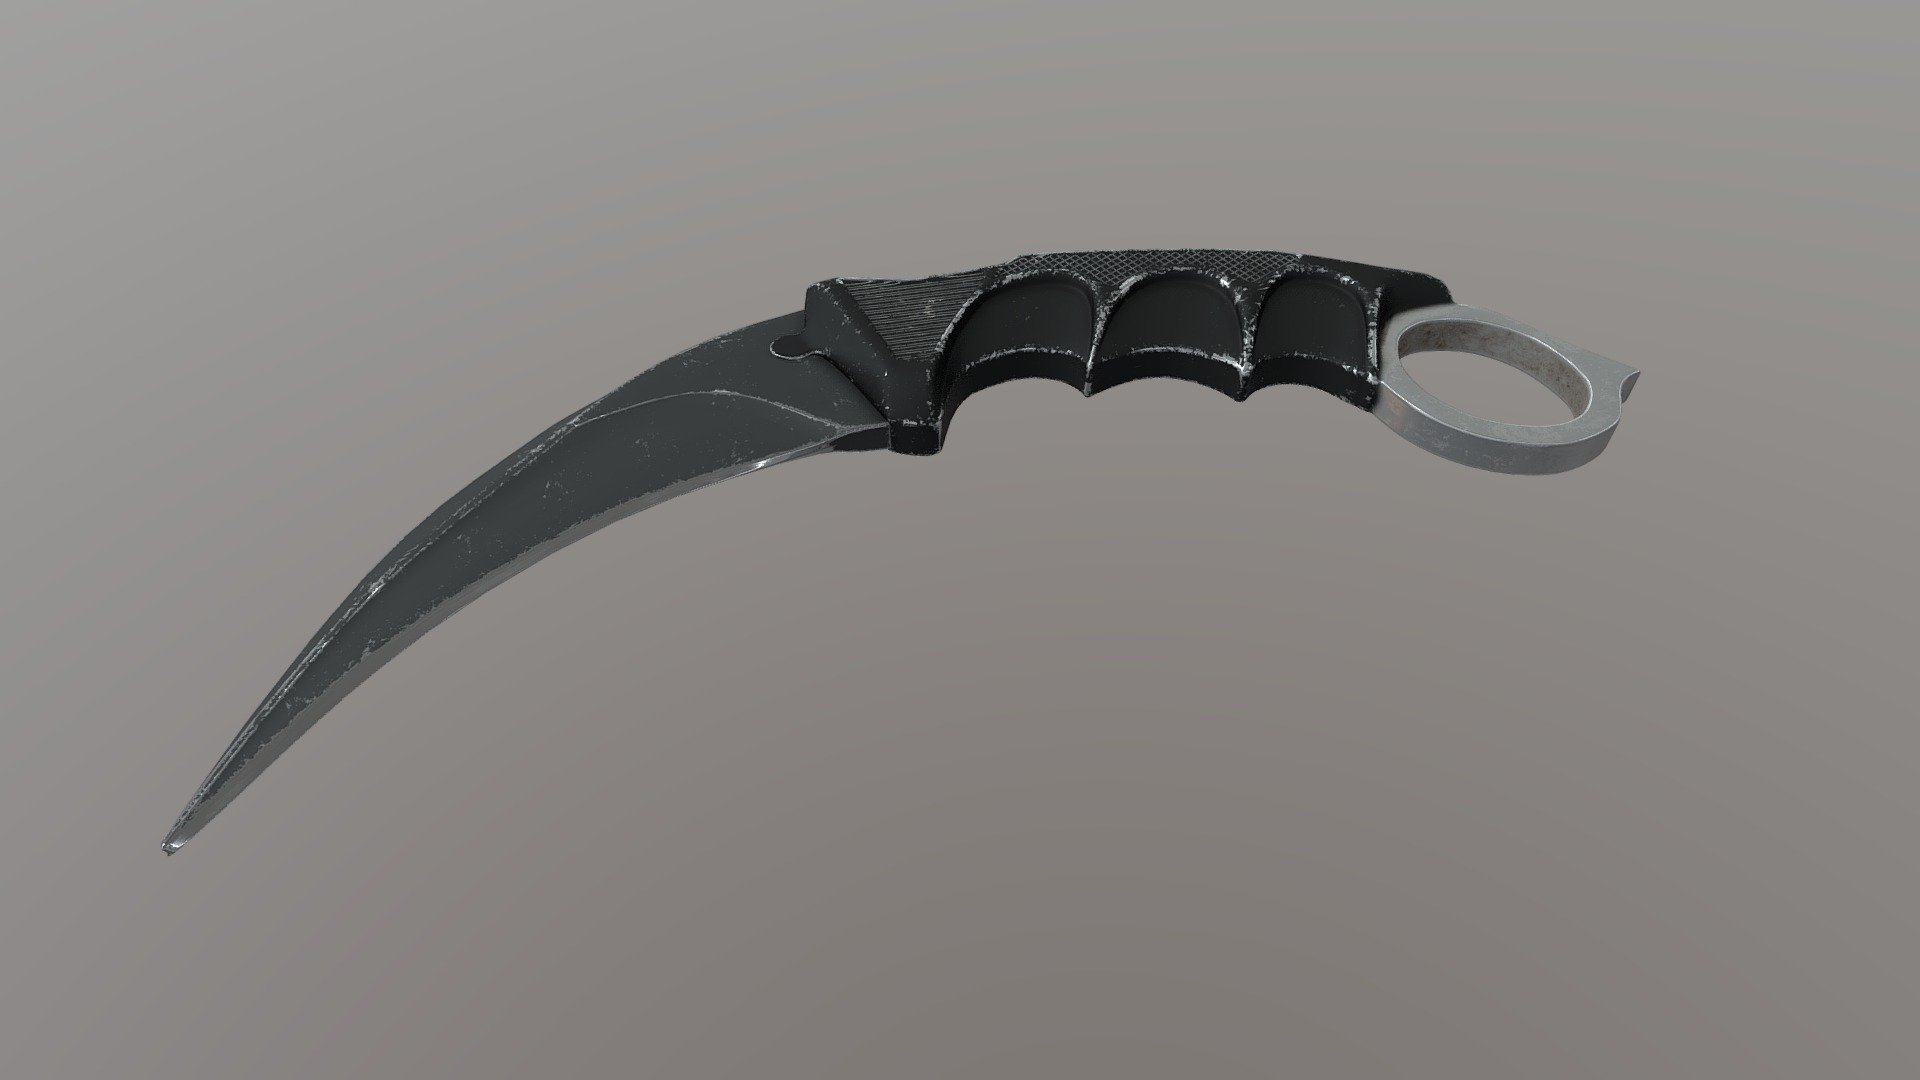 Karambit knife - 3D model by gijan (@gijan) [6a16db6]